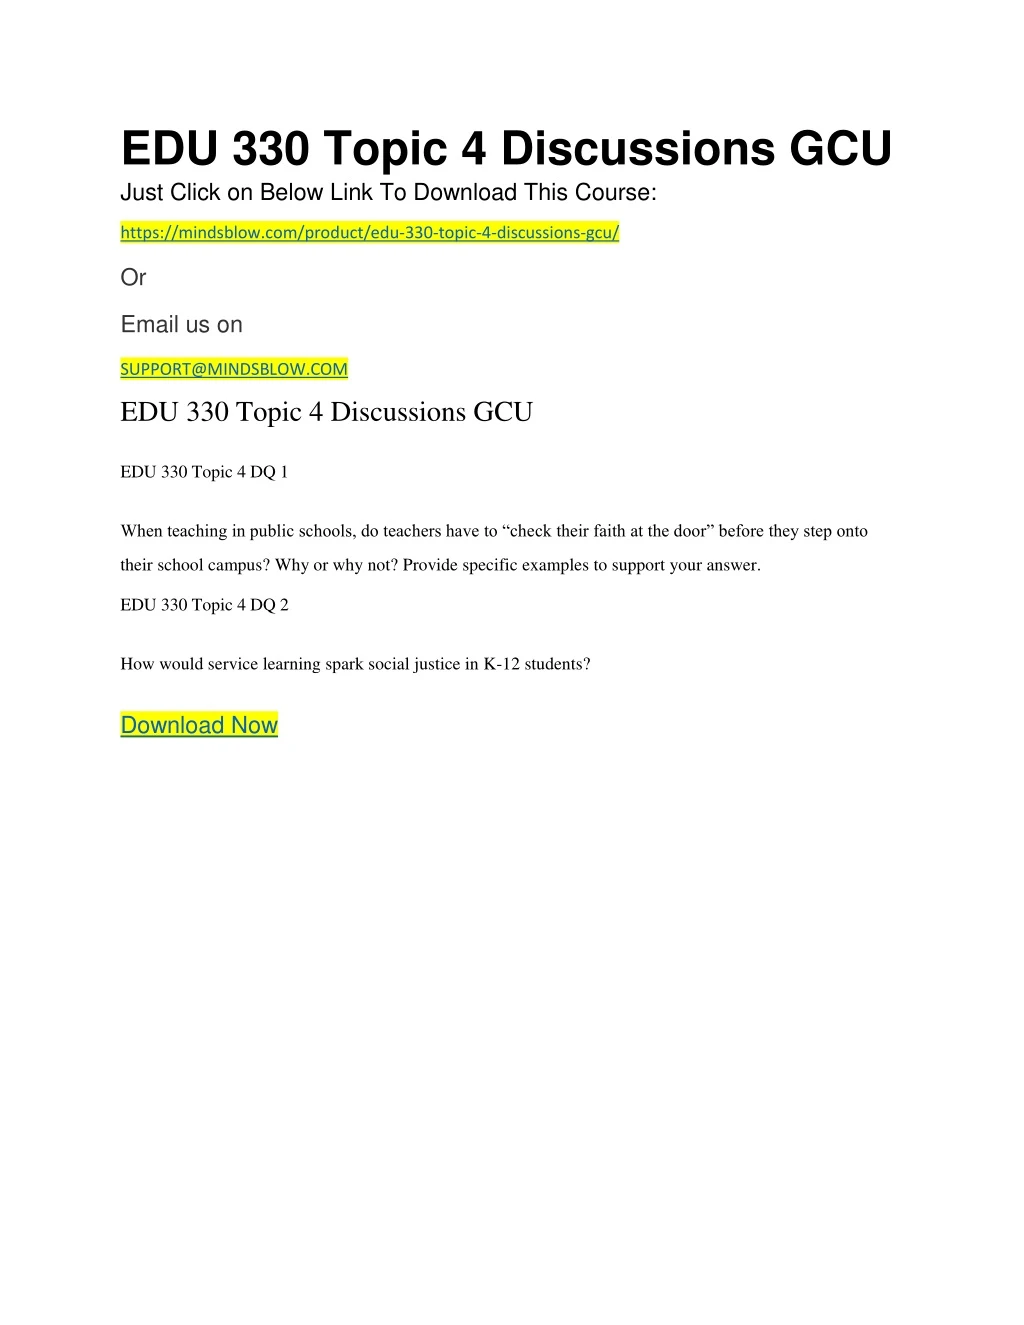 edu 330 topic 4 discussions gcu just click